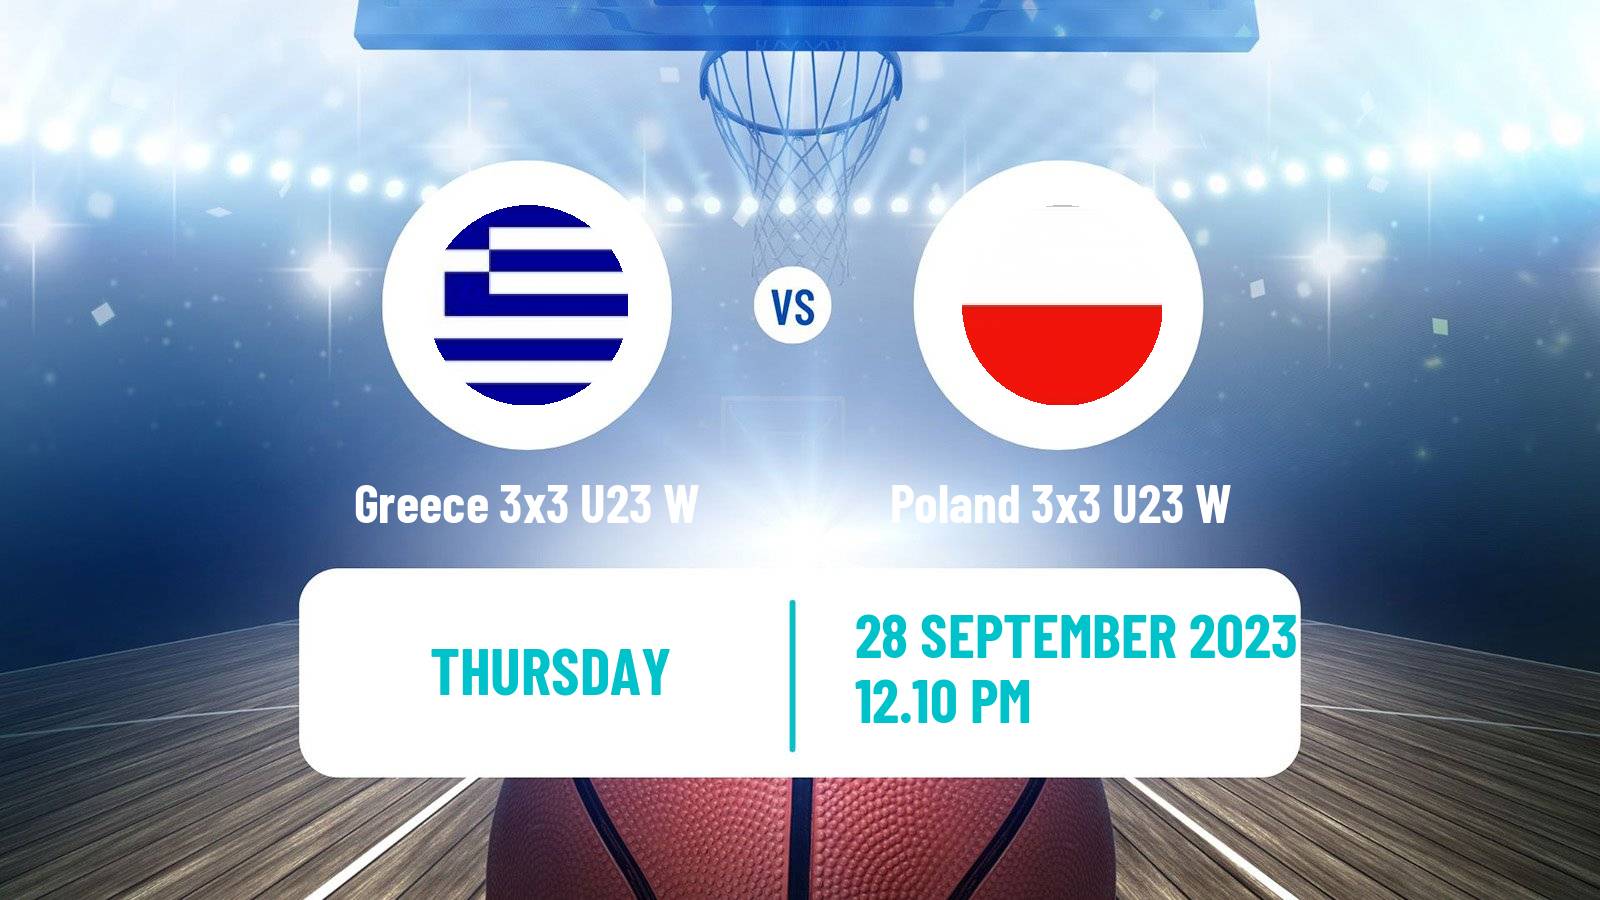 Basketball World Cup Basketball 3x3 U23 Women Greece 3x3 U23 W - Poland 3x3 U23 W